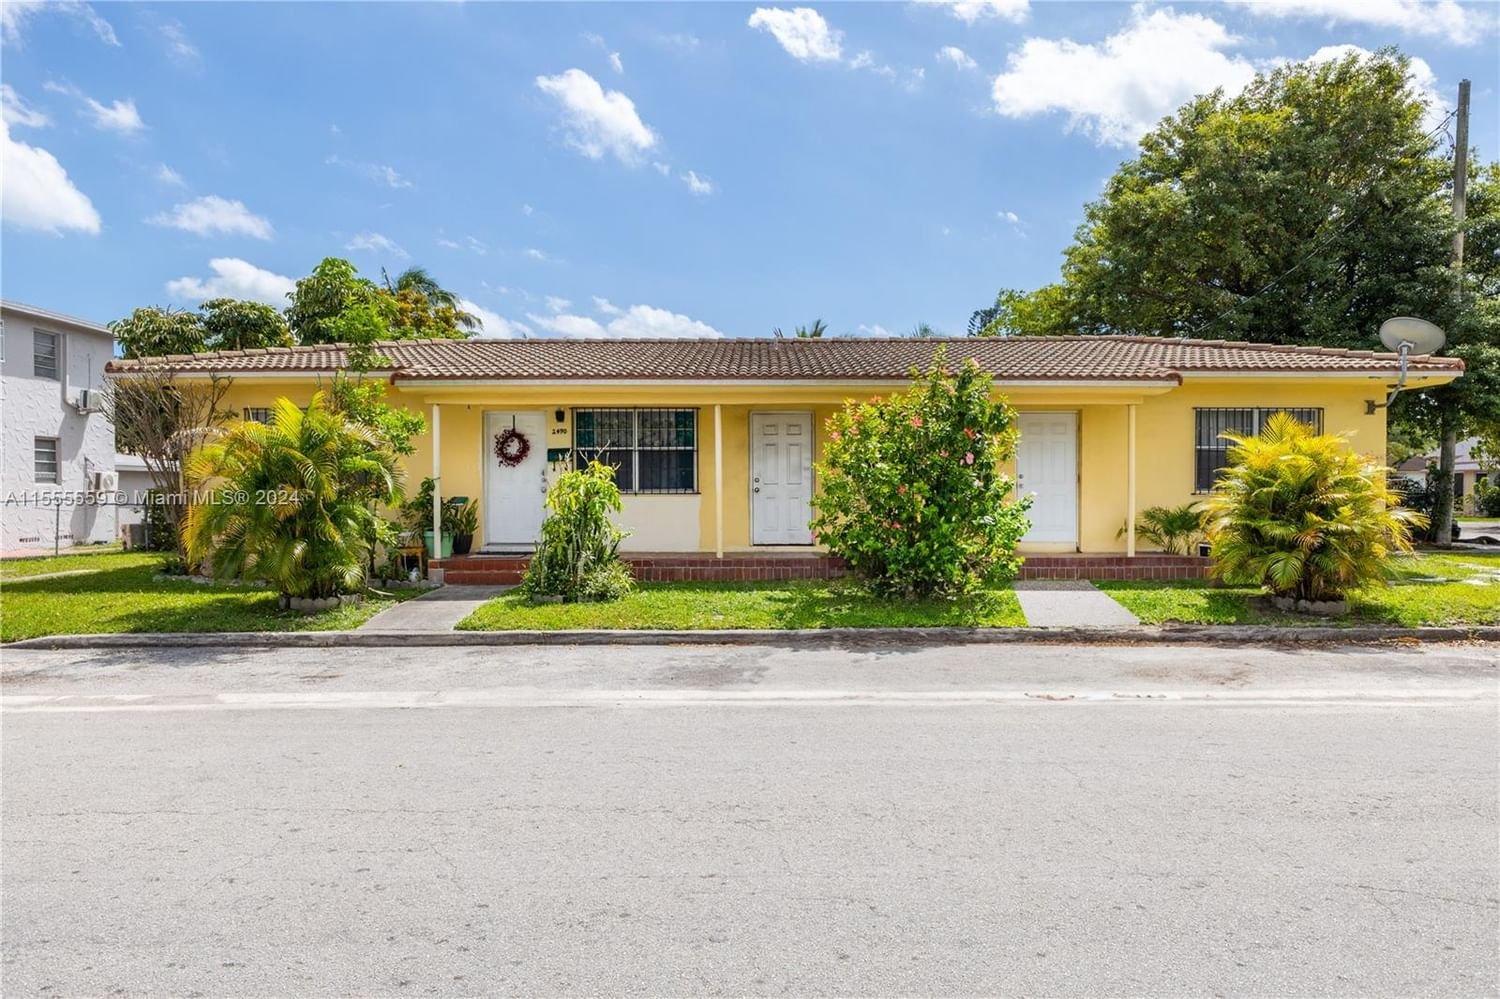 Real estate property located at 2490 10th St, Miami-Dade County, ORANGE GLADE, Miami, FL